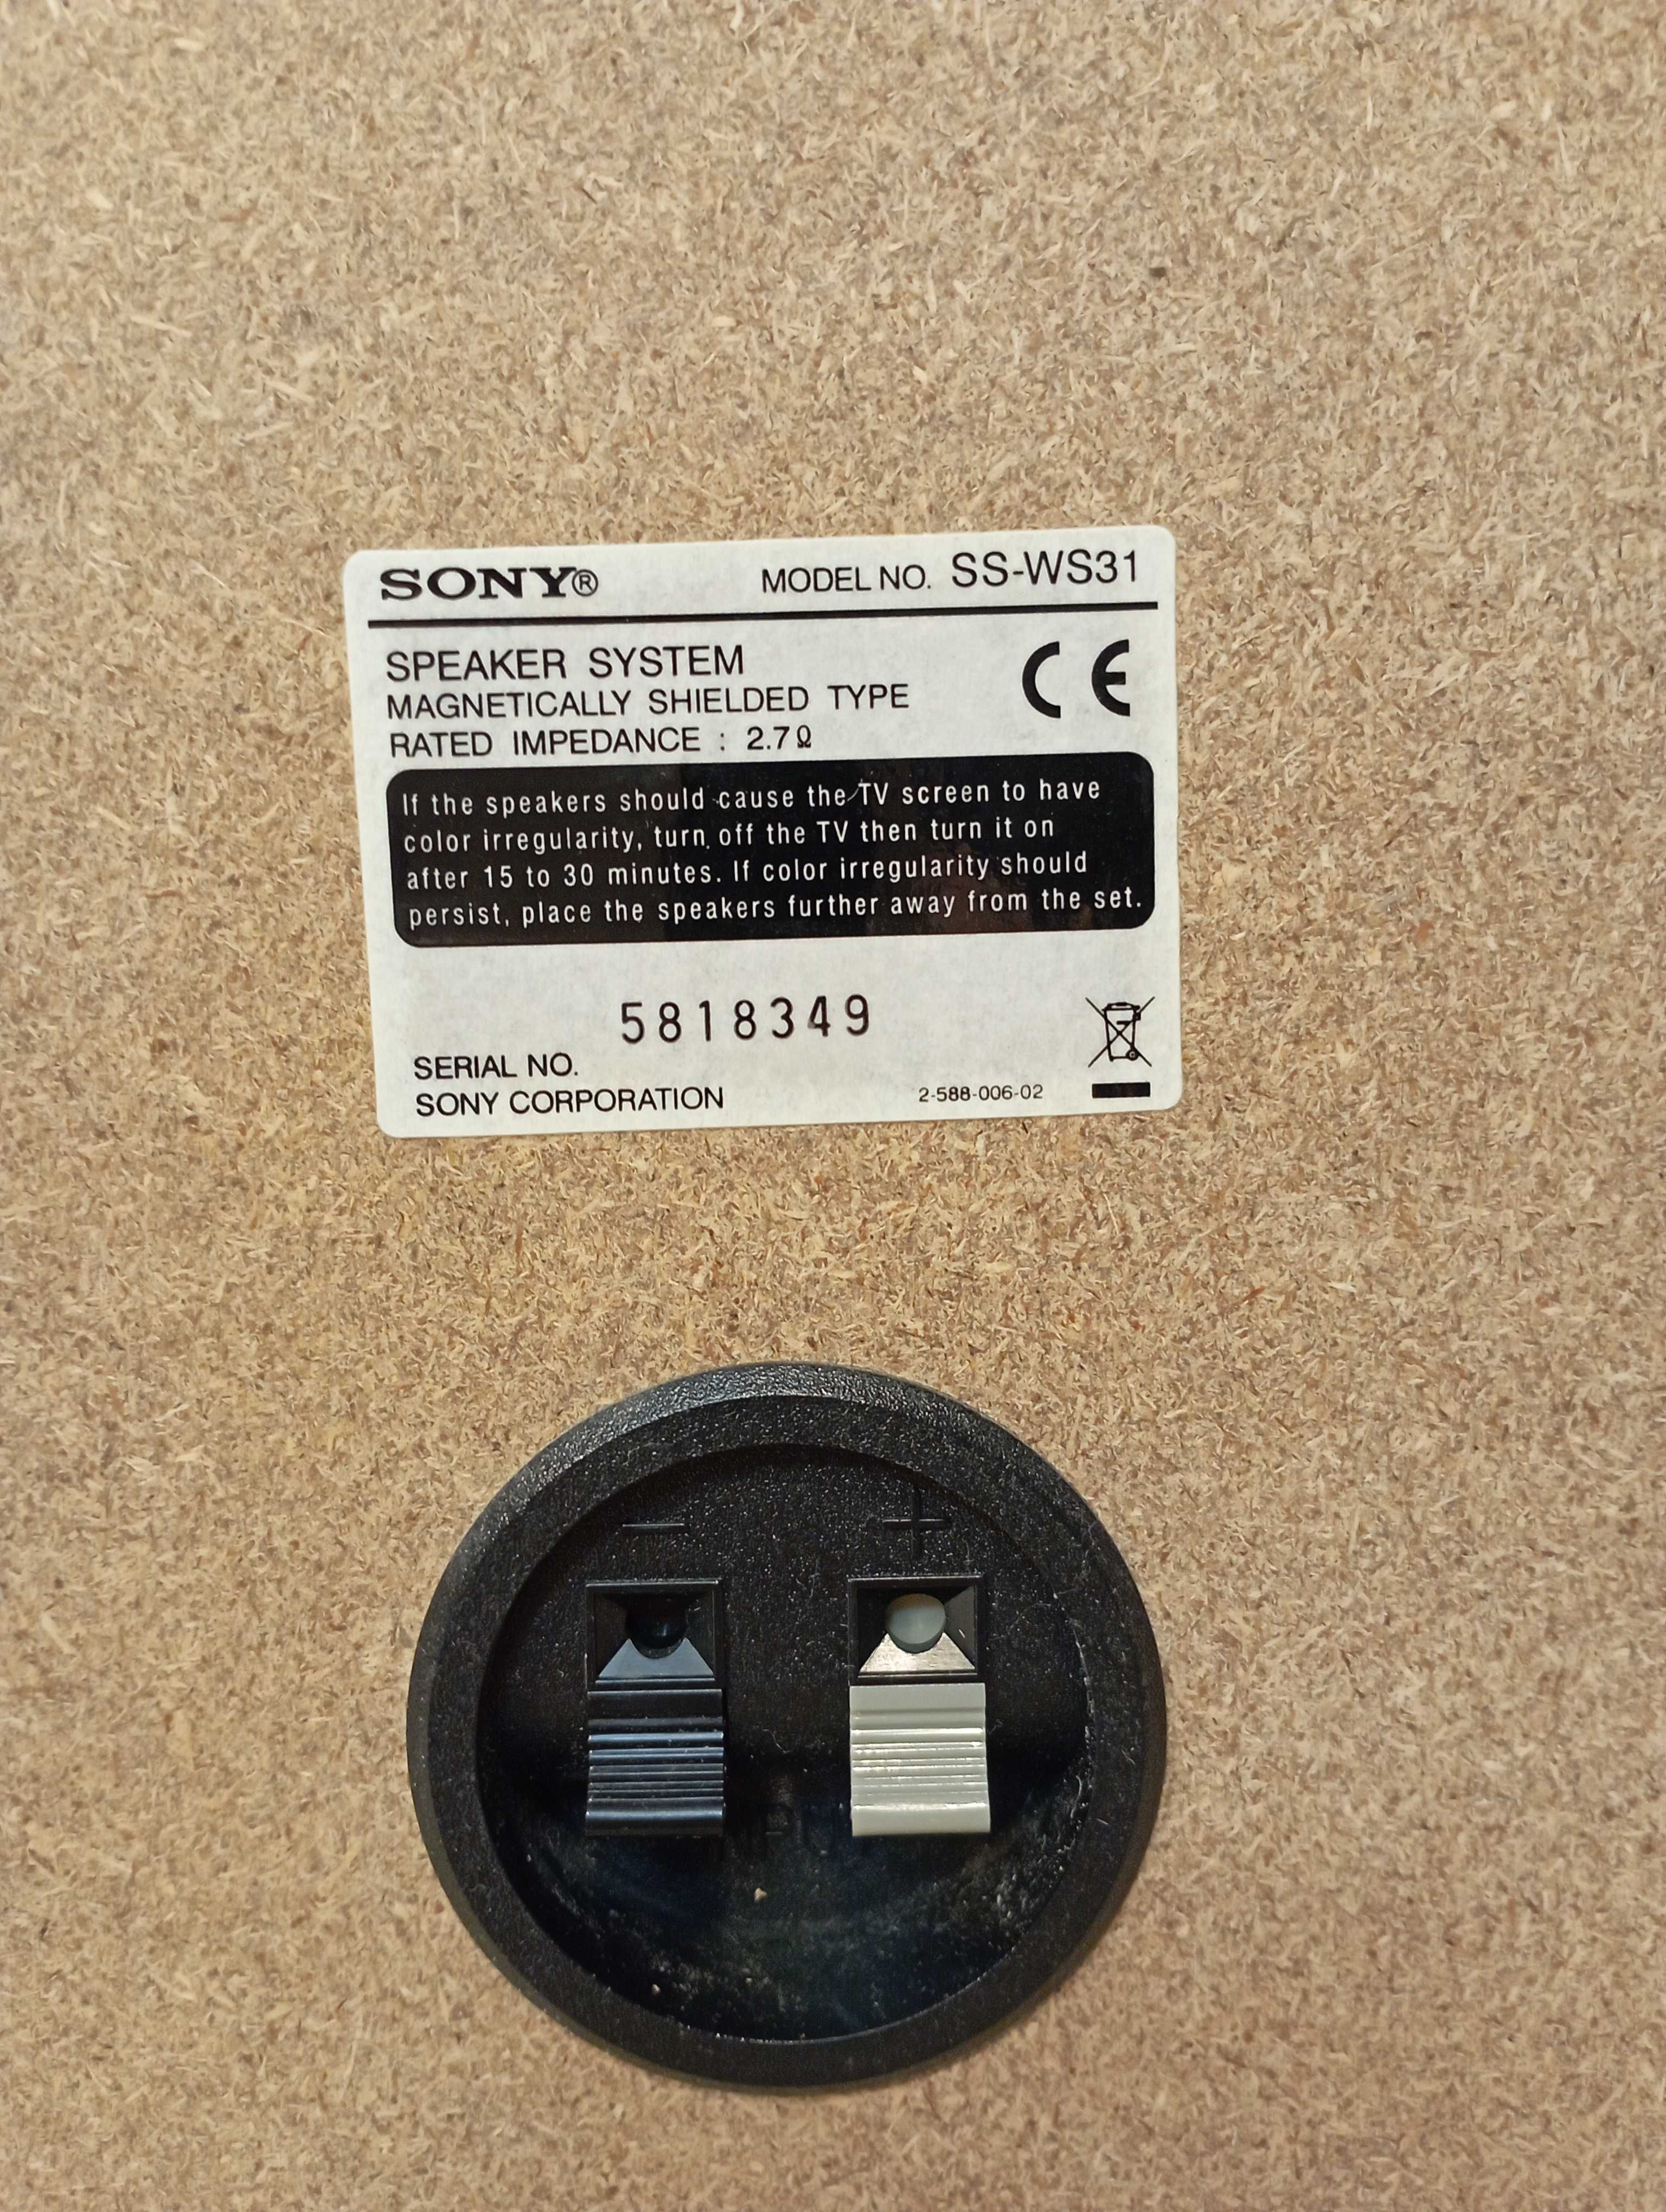 Продам домашний кинотеатр Sony HCD-DZ 100 K  Полный комплект